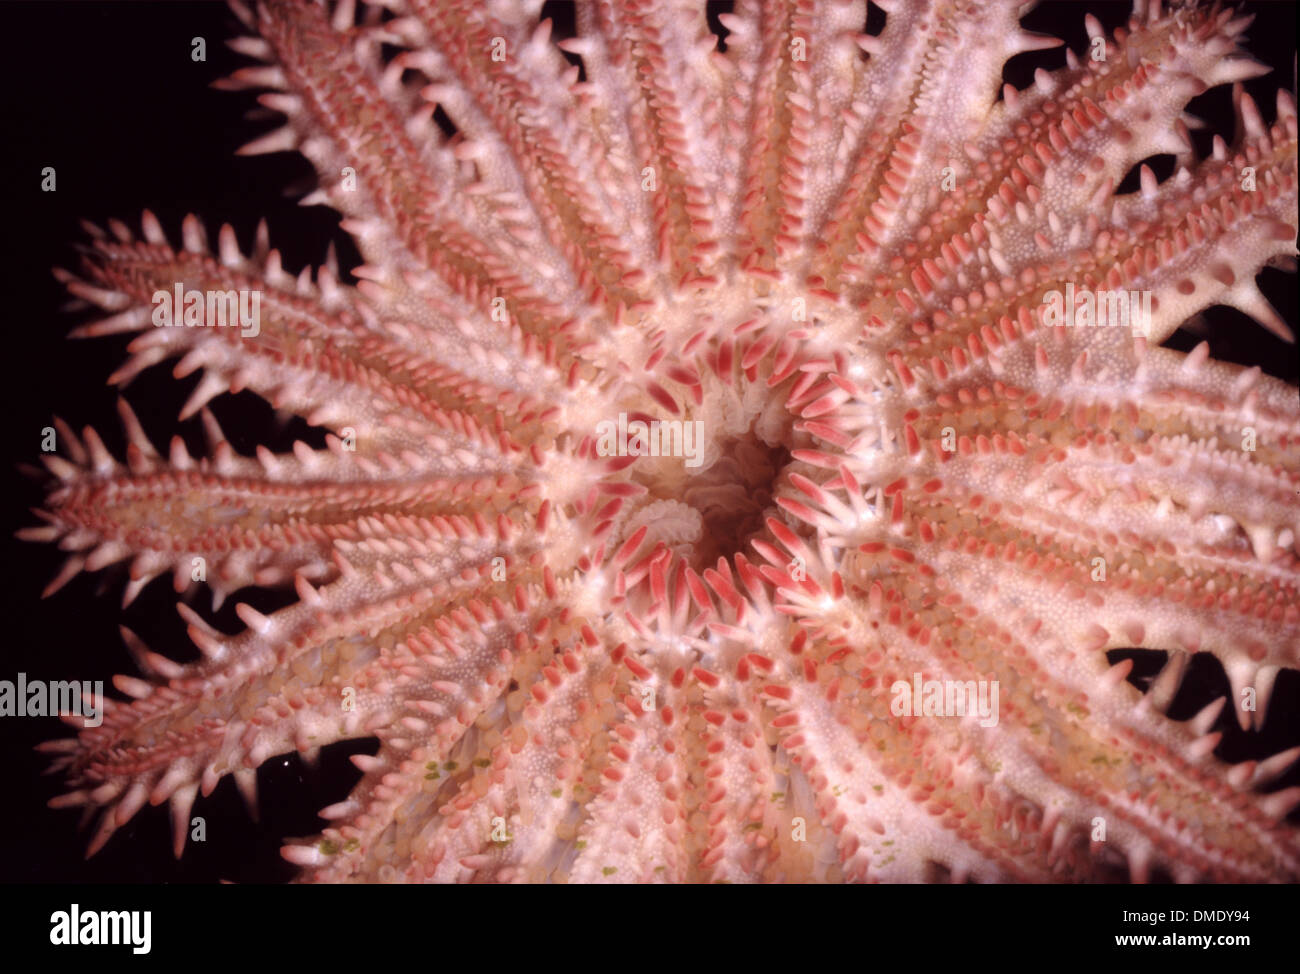 crown-of-thorns-starfish-acanthaster-planci-DMDY94.jpg